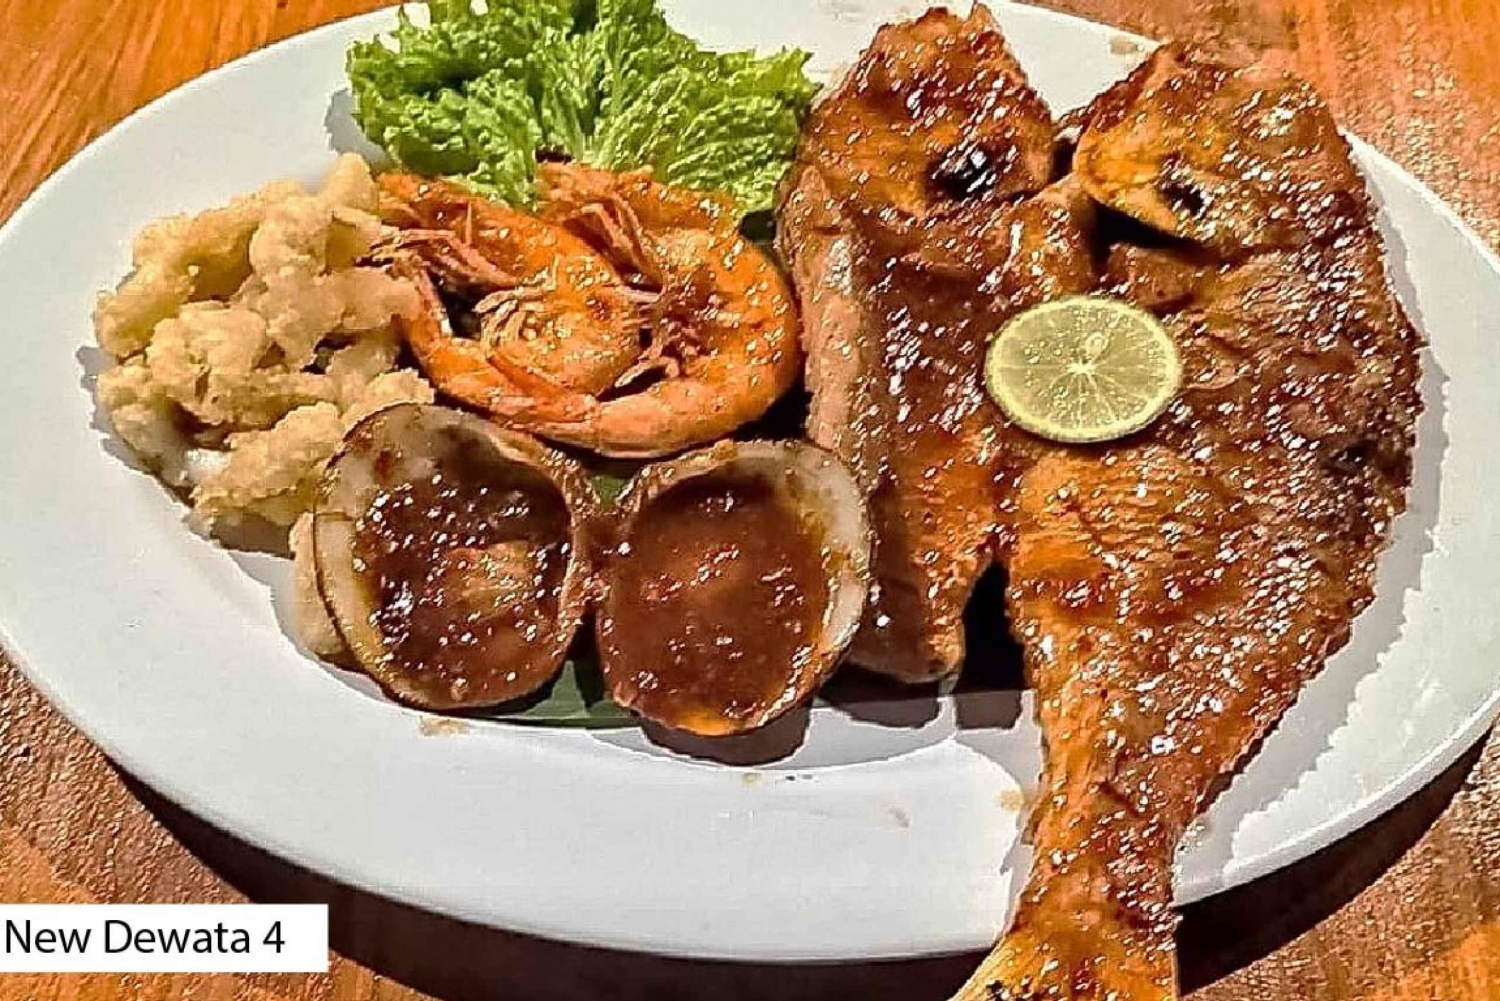 Jimbaran Seafood Meal in Bali New Dewata Cafe